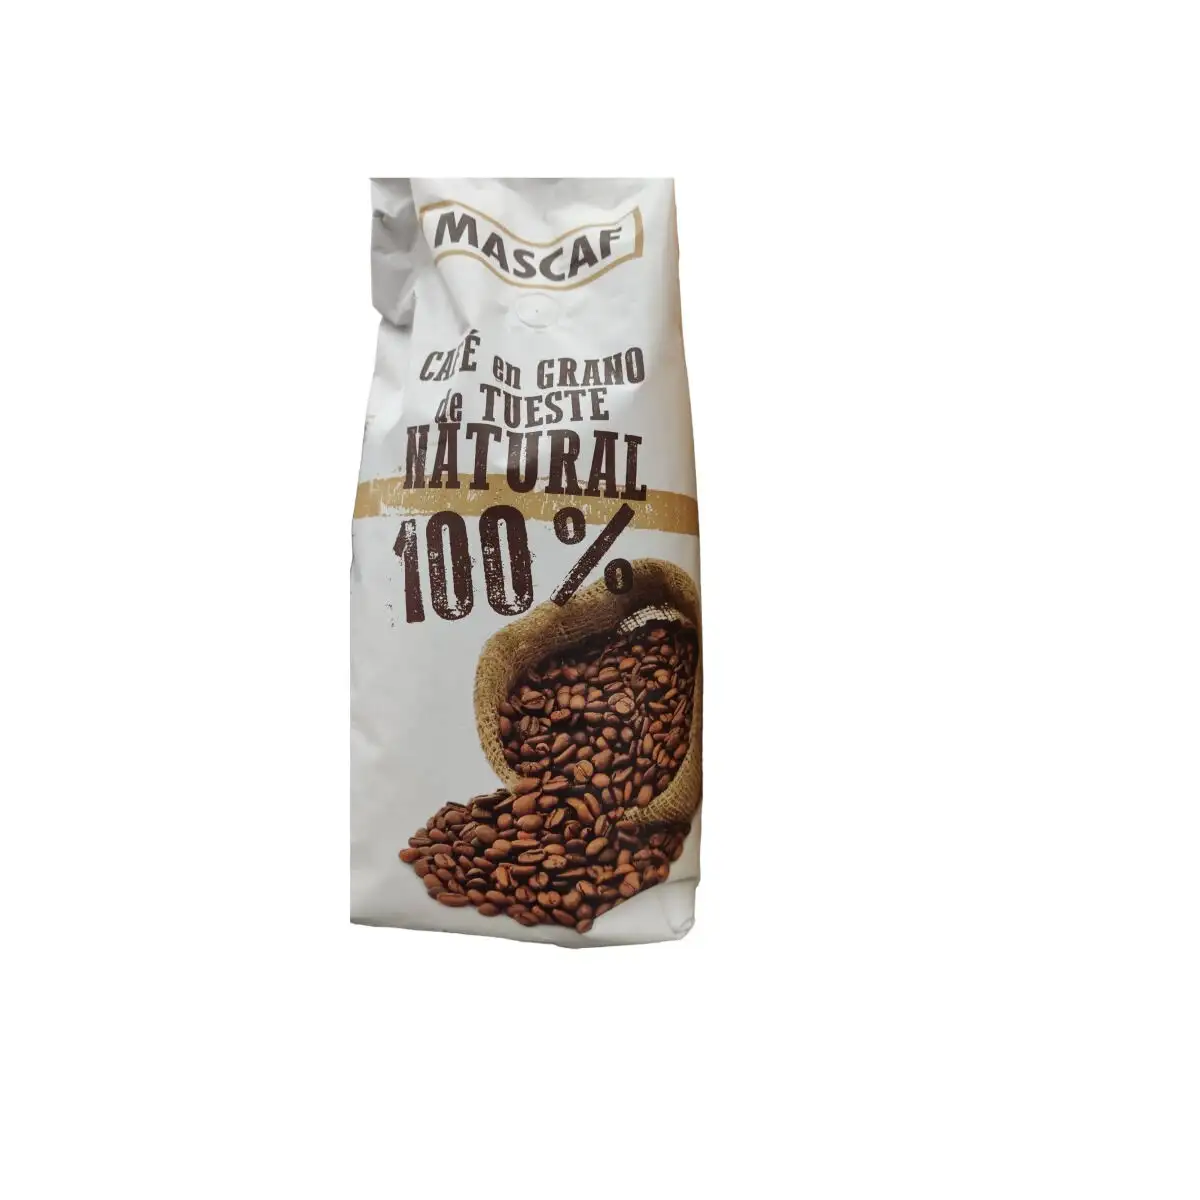 Cafe en grains mascaf natural 100 1 kg _3939. DIAYTAR SENEGAL - Où Choisir est un Plaisir. Explorez notre boutique en ligne et choisissez parmi des produits de qualité qui satisferont vos besoins et vos goûts.